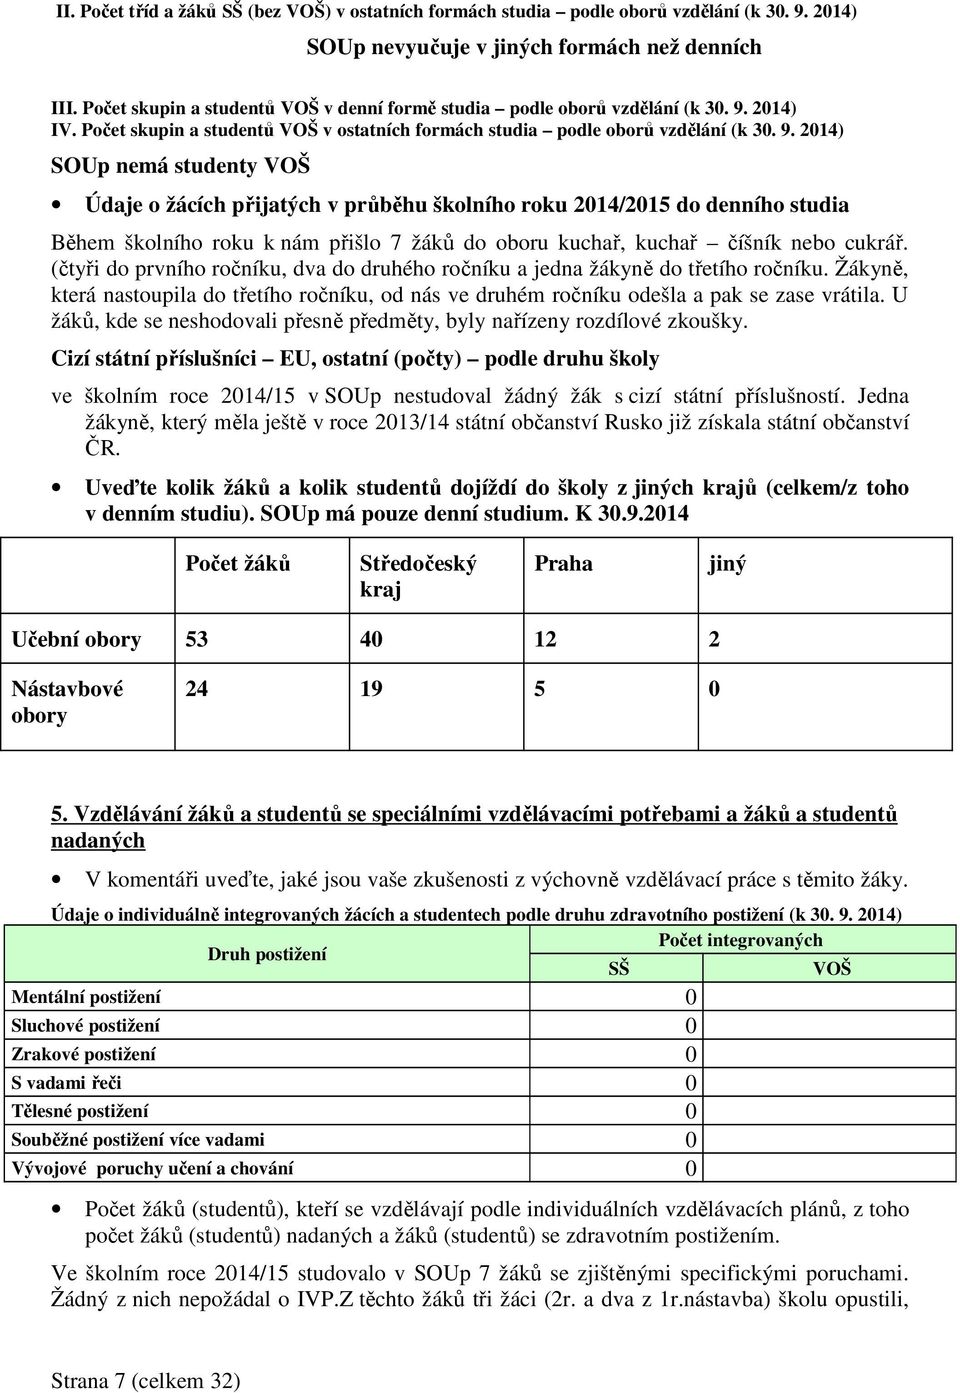 2014) IV. Počet skupin a studentů VOŠ v ostatních formách studia podle oborů vzdělání (k 30. 9.